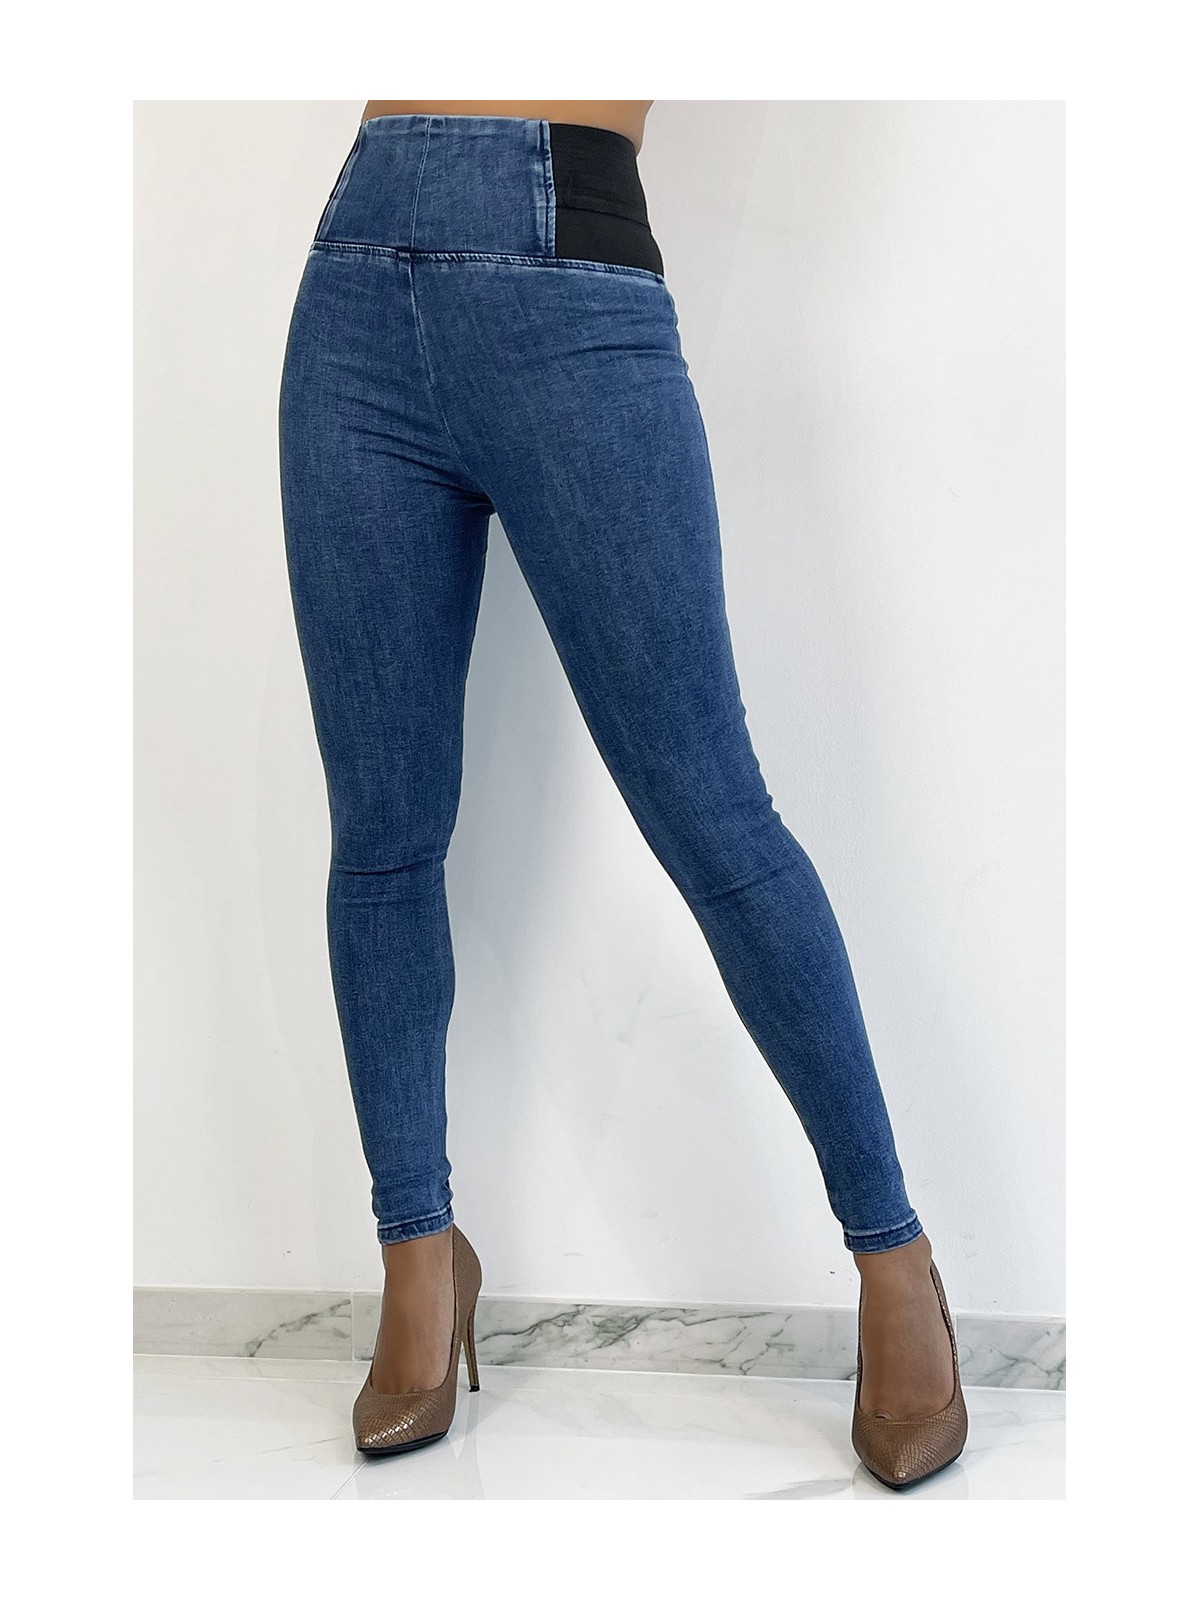 Pantalon jeans bleu taille haute avec élastique à la taille - 2